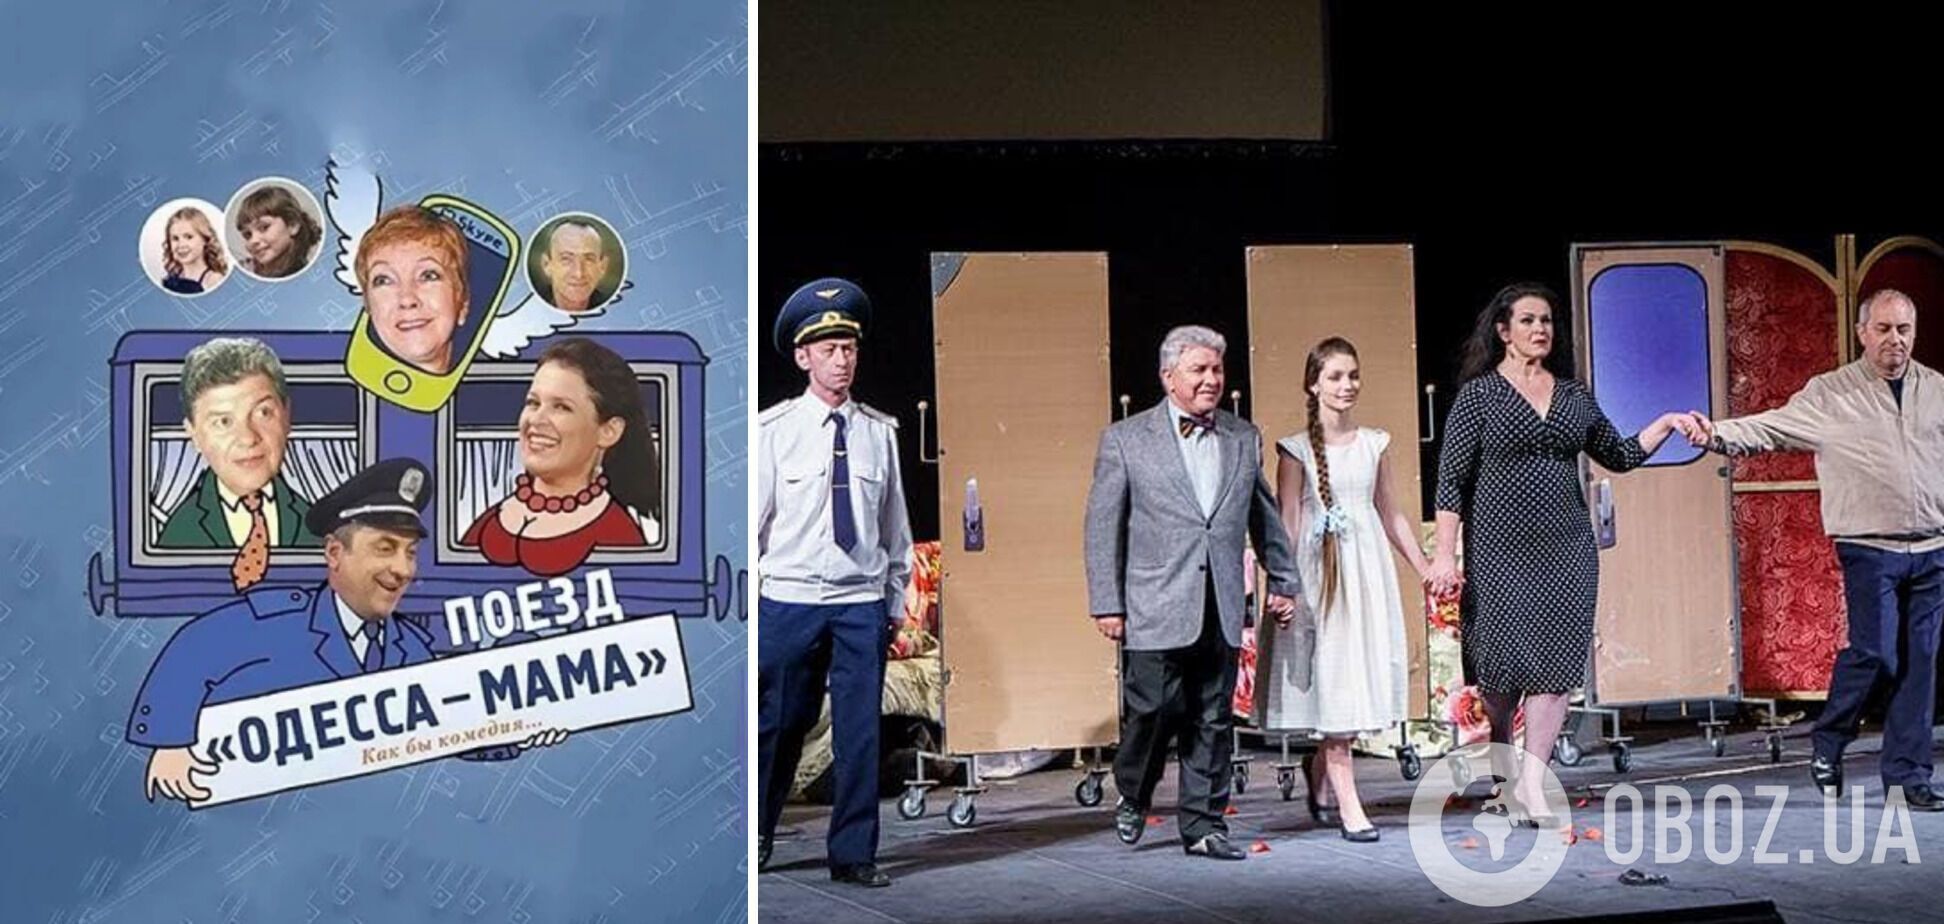 Руслана Писанка підвернула ногу й втратила свідомість на сцені театру